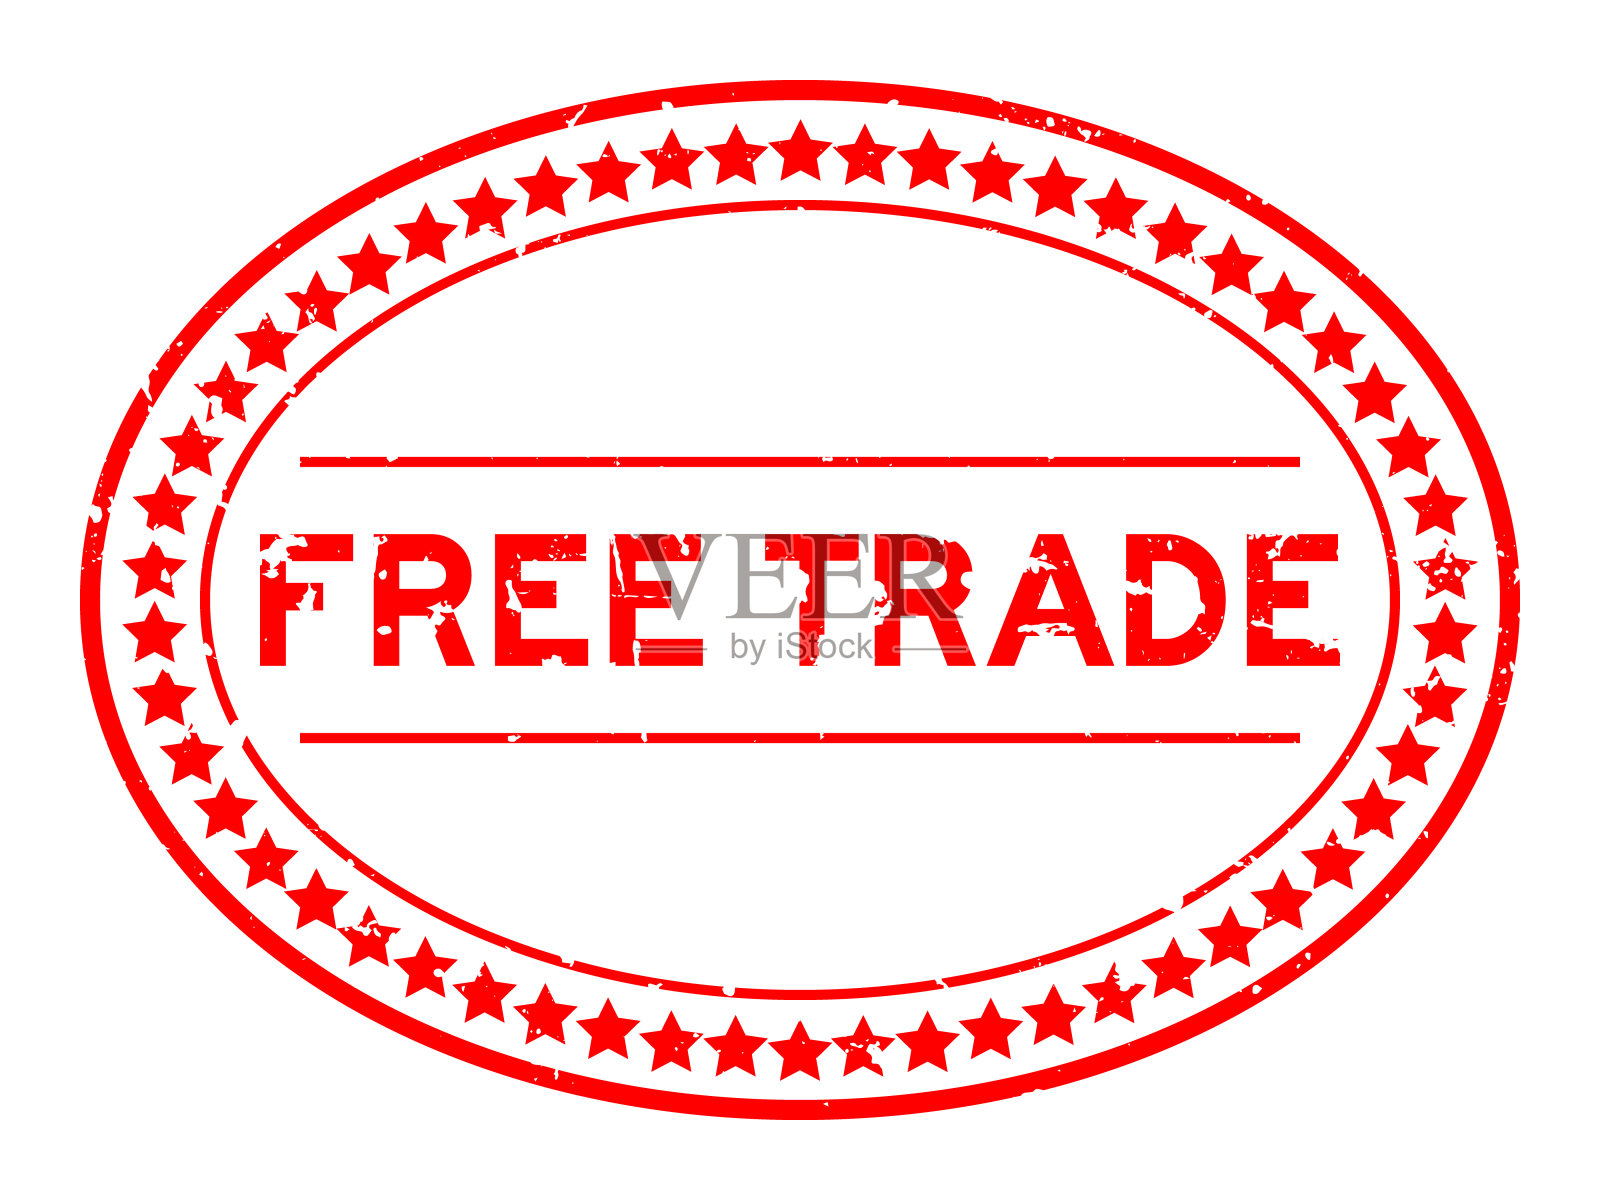 垃圾红色自由贸易字椭圆形橡胶印章邮票在白色背景插画图片素材